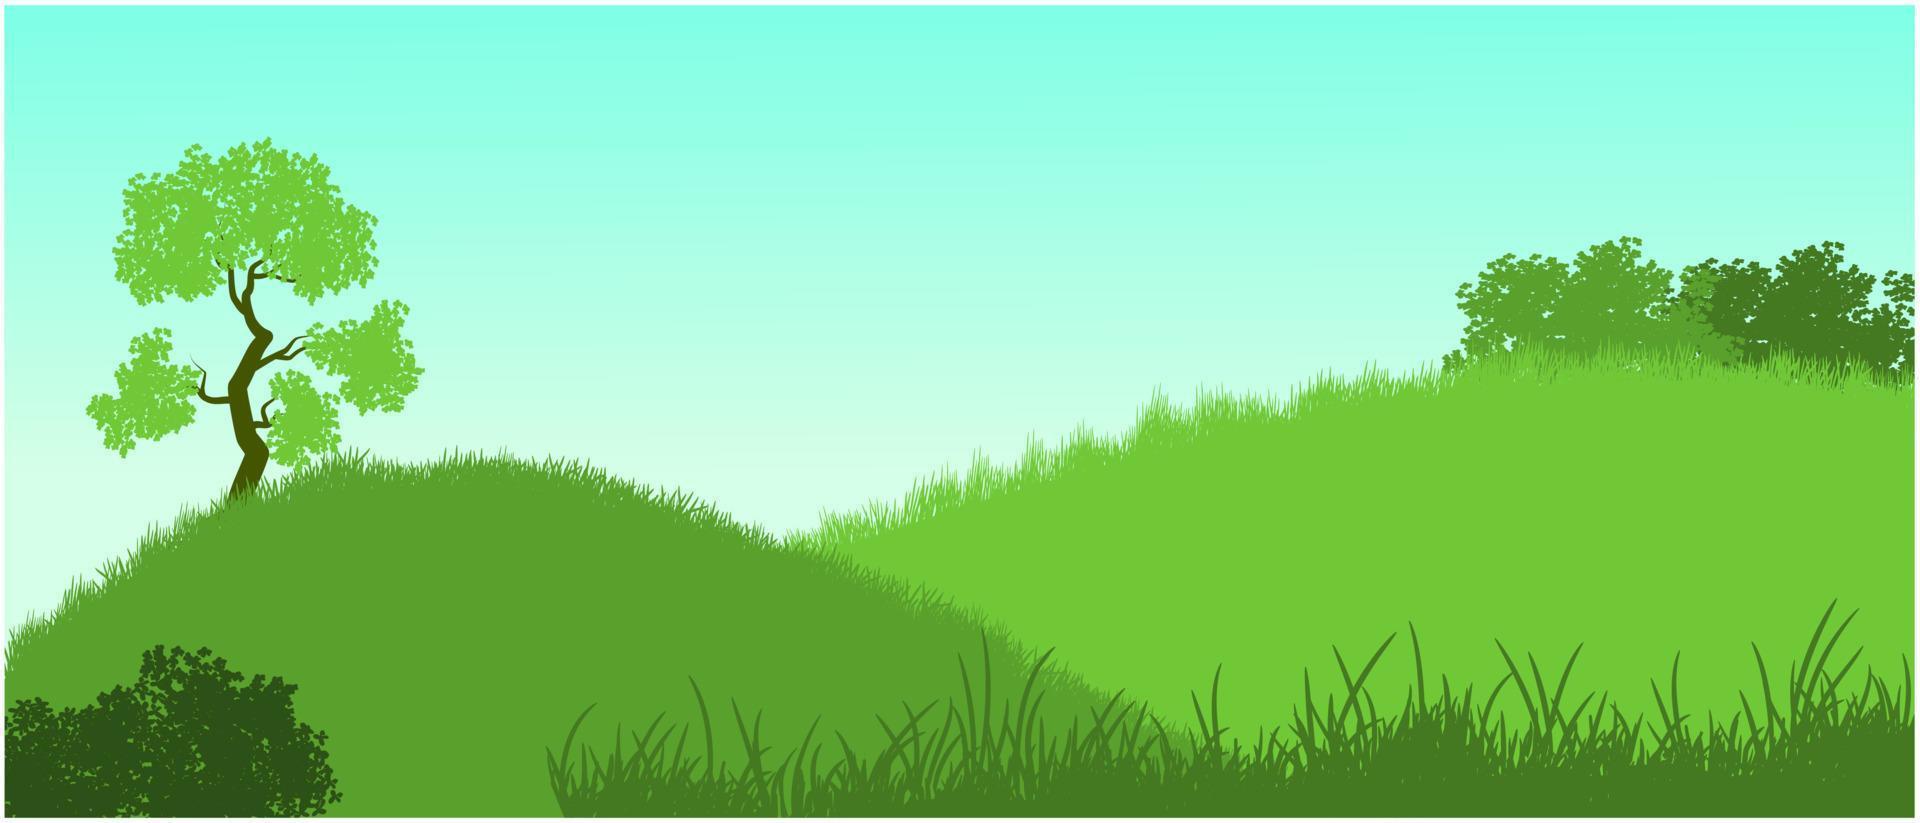 grönt gräs tecknade kullar siluett och sommar himmel vektor